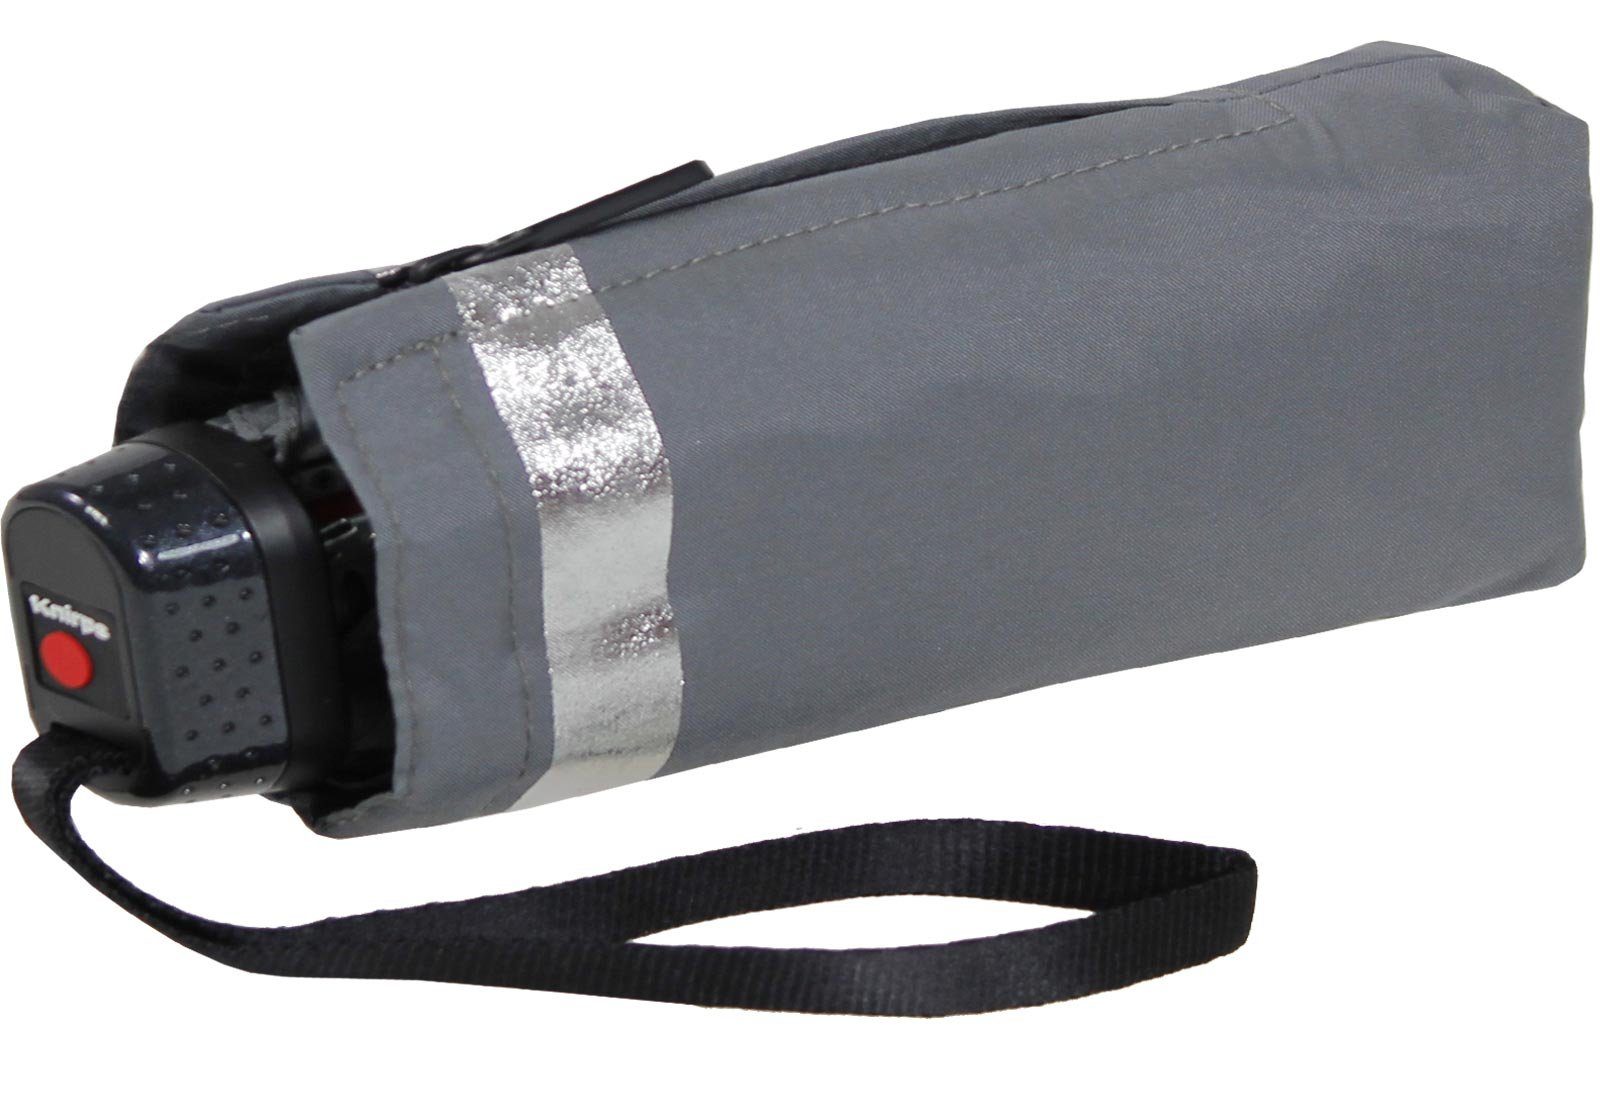 Knirps® Taschenregenschirm Super-Mini-Schirm Slim TS.010 - Solids, super  klein und leicht